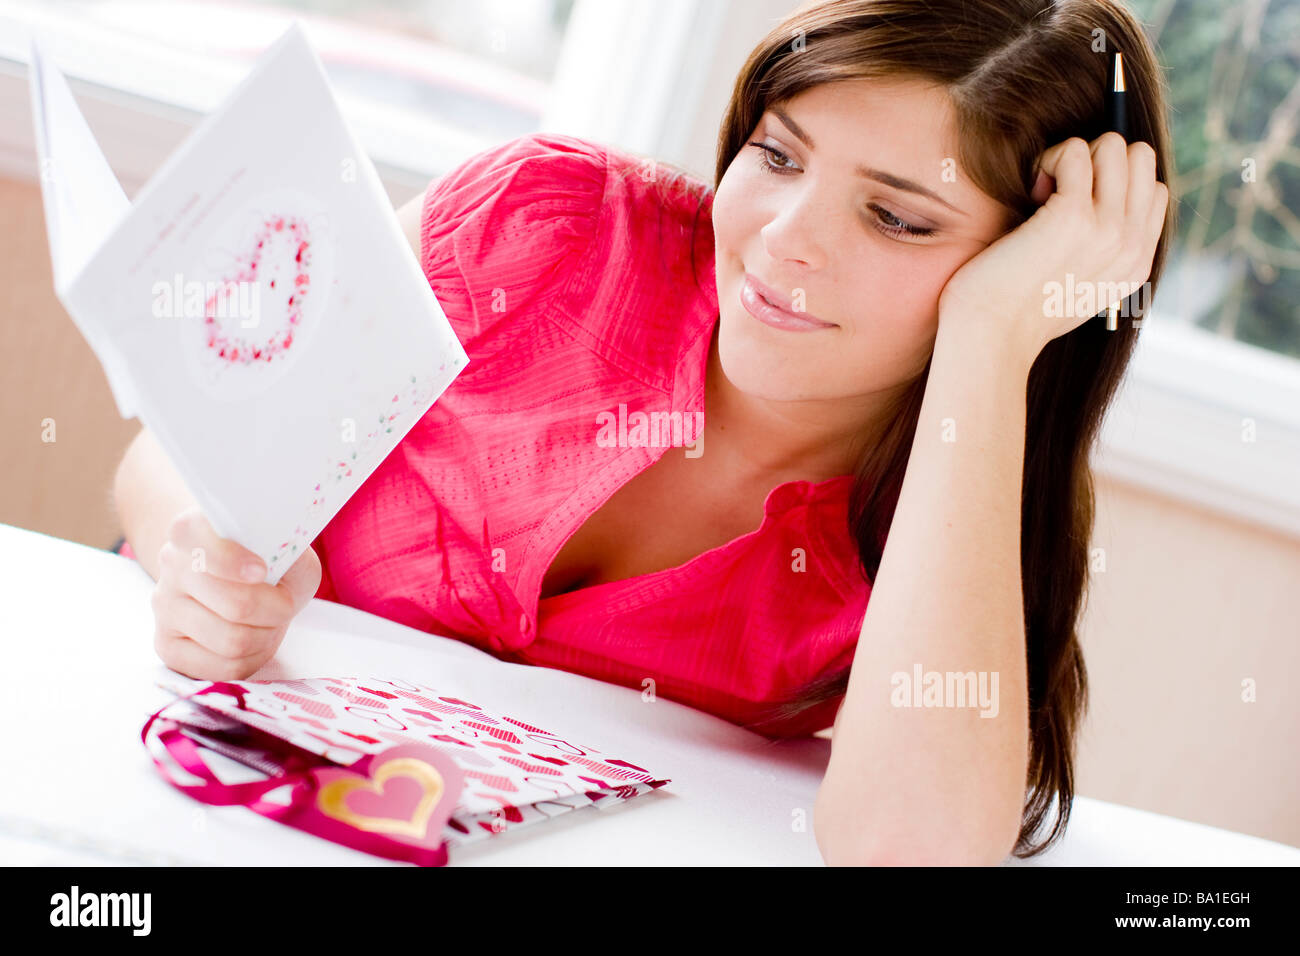 Frau eine Valentine s Day Karte betrachten Stockfoto